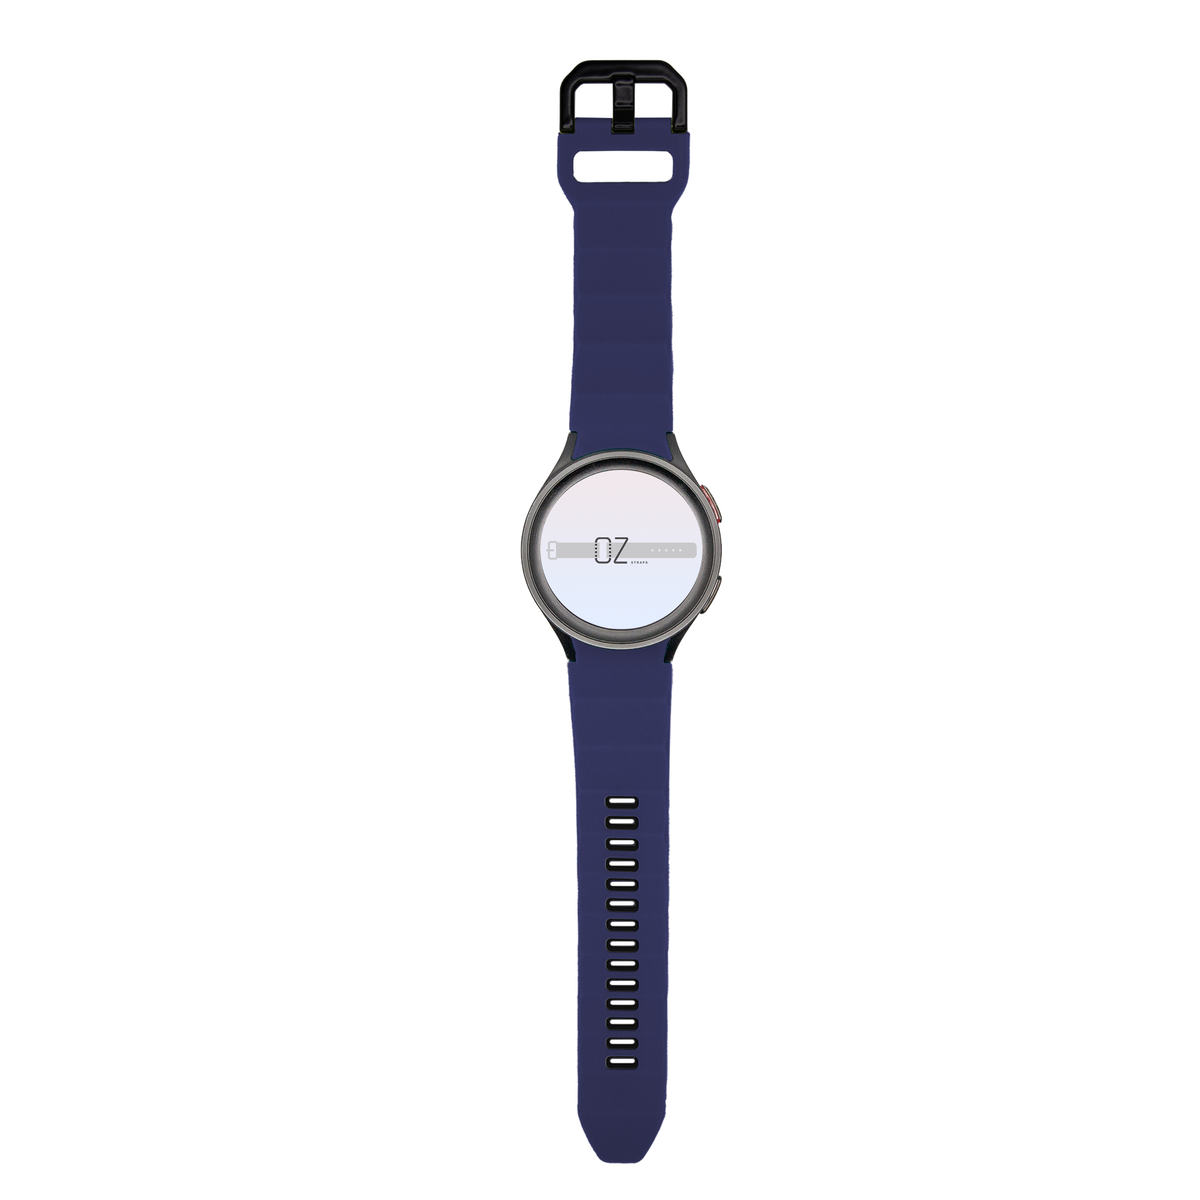 Rugged Sport Samsung Galaxy Watch Band